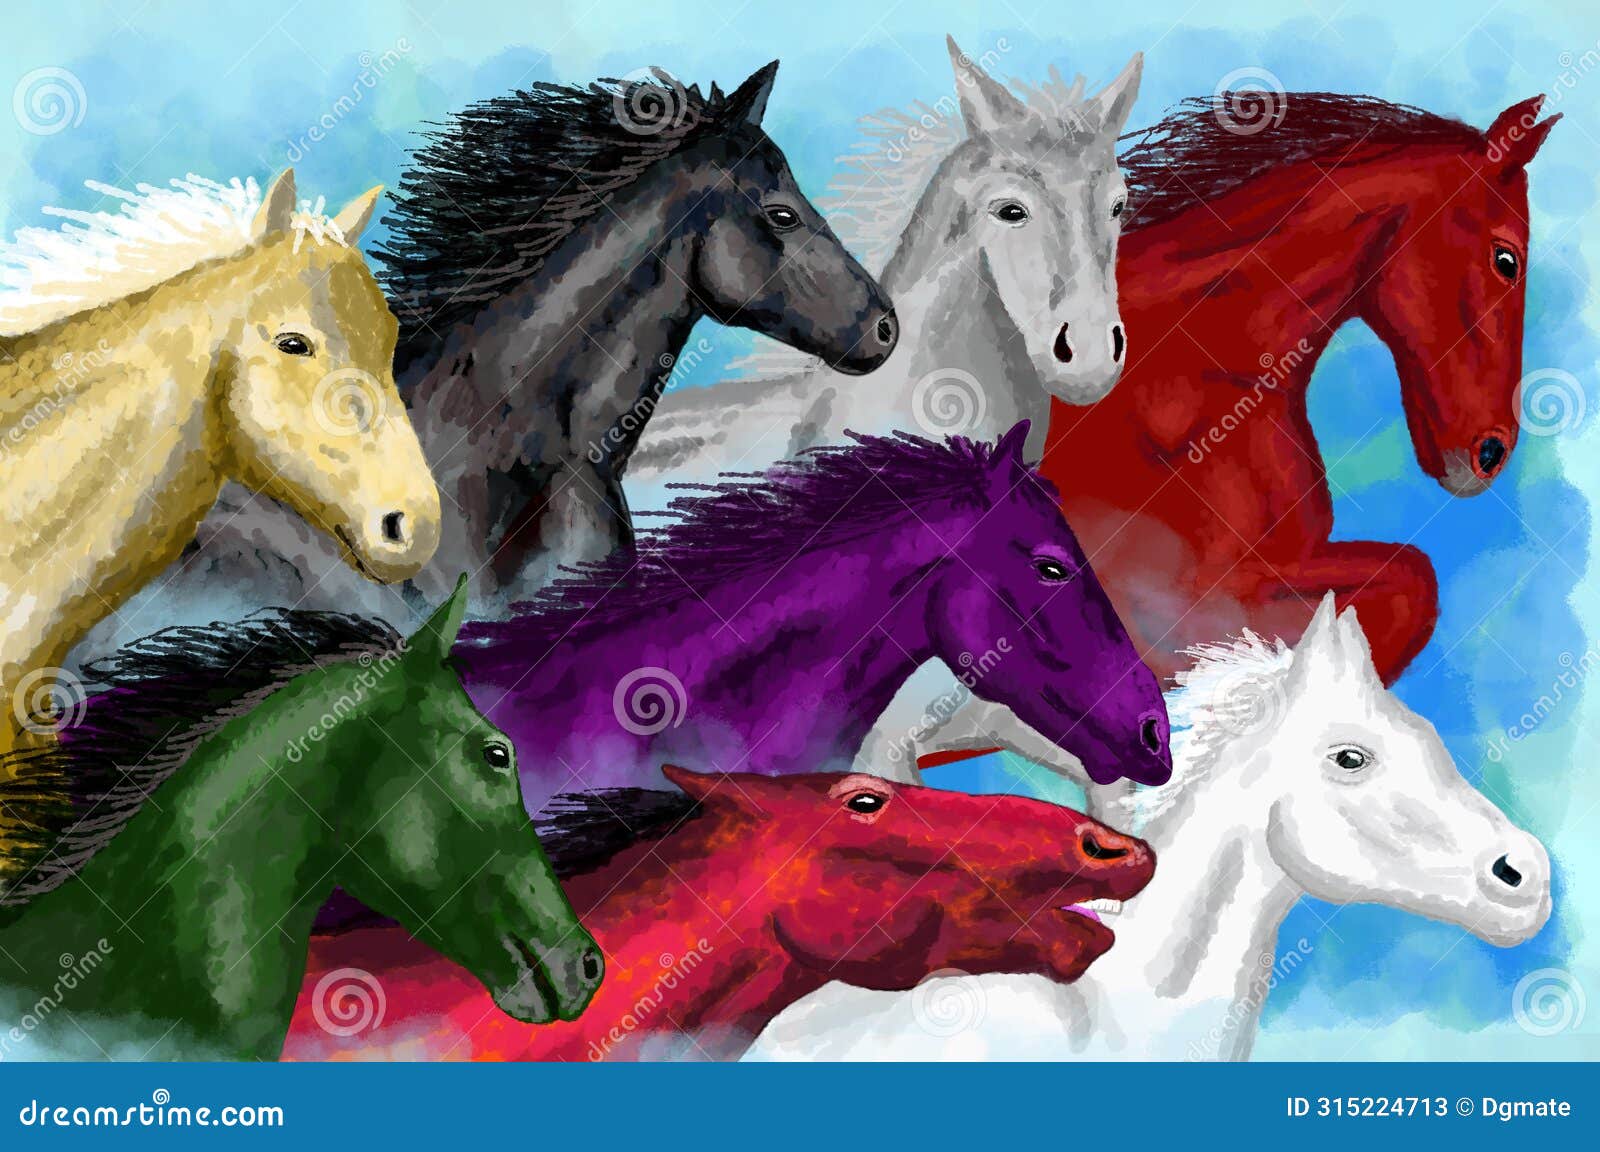 lucky eight horses art, feng shui